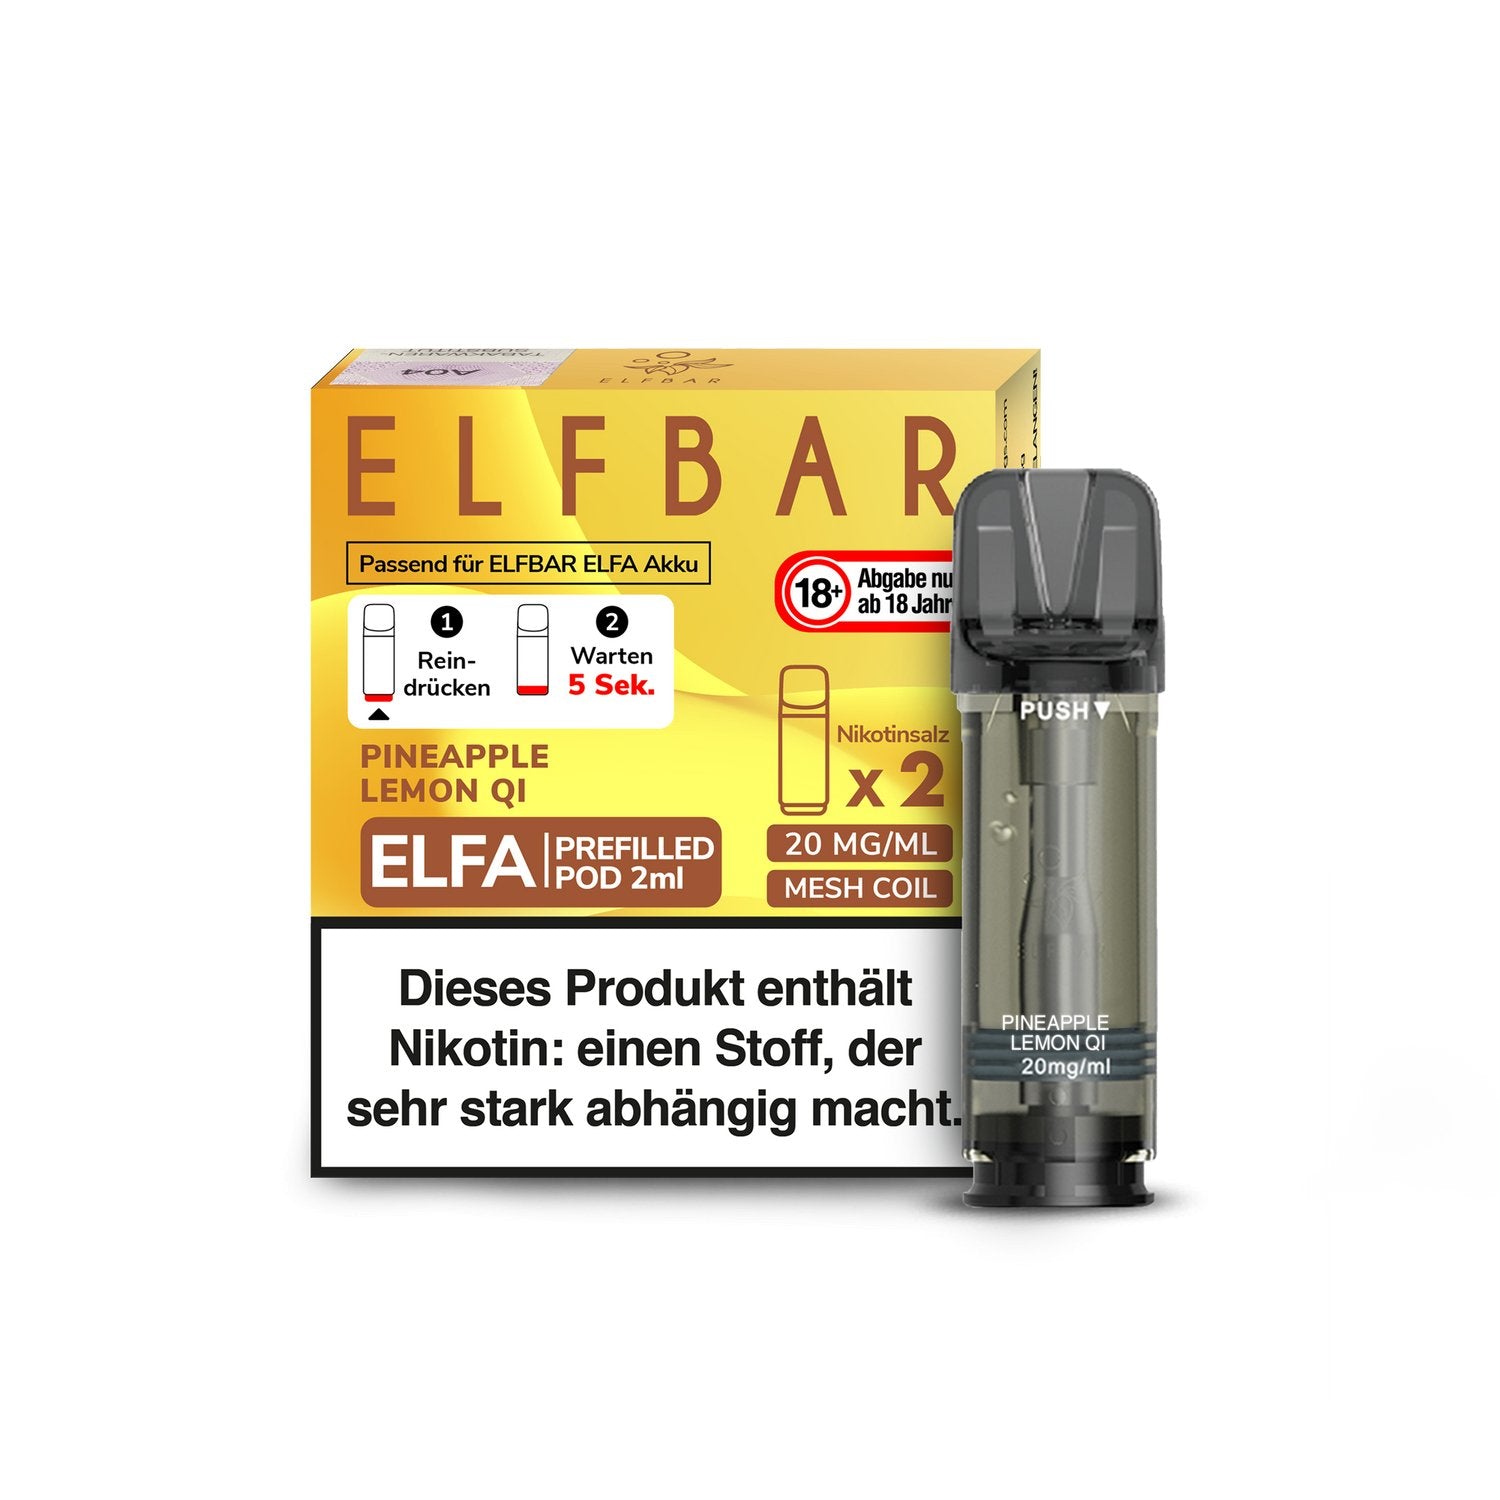 Elf Bar - Elfa - 2ml Prefilled Pods (2 Stück pro Packung) - Pineapple Lemon Qi 1er Packung 20 mg/ml- Vapes4you